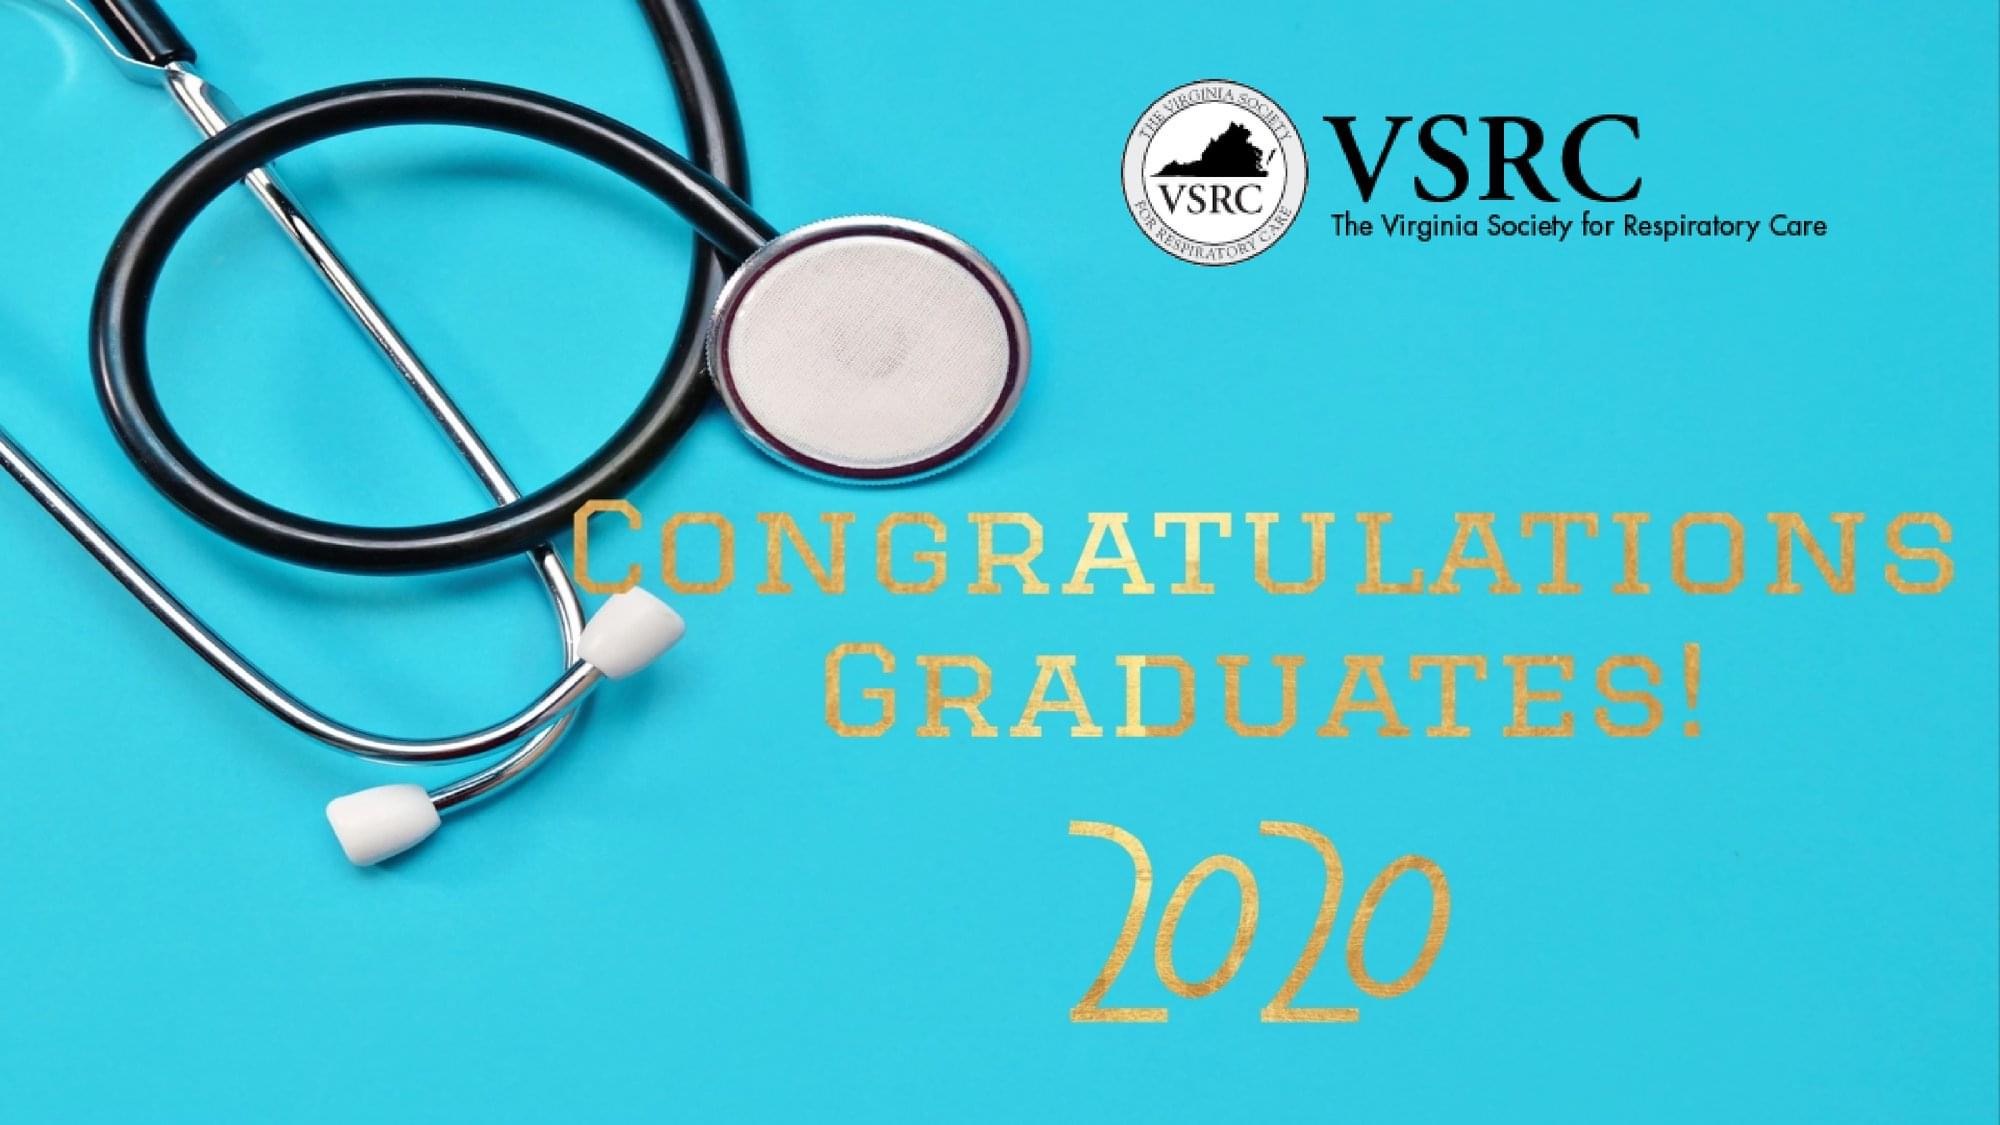 VSRC Congratulates 2020 Graduates!